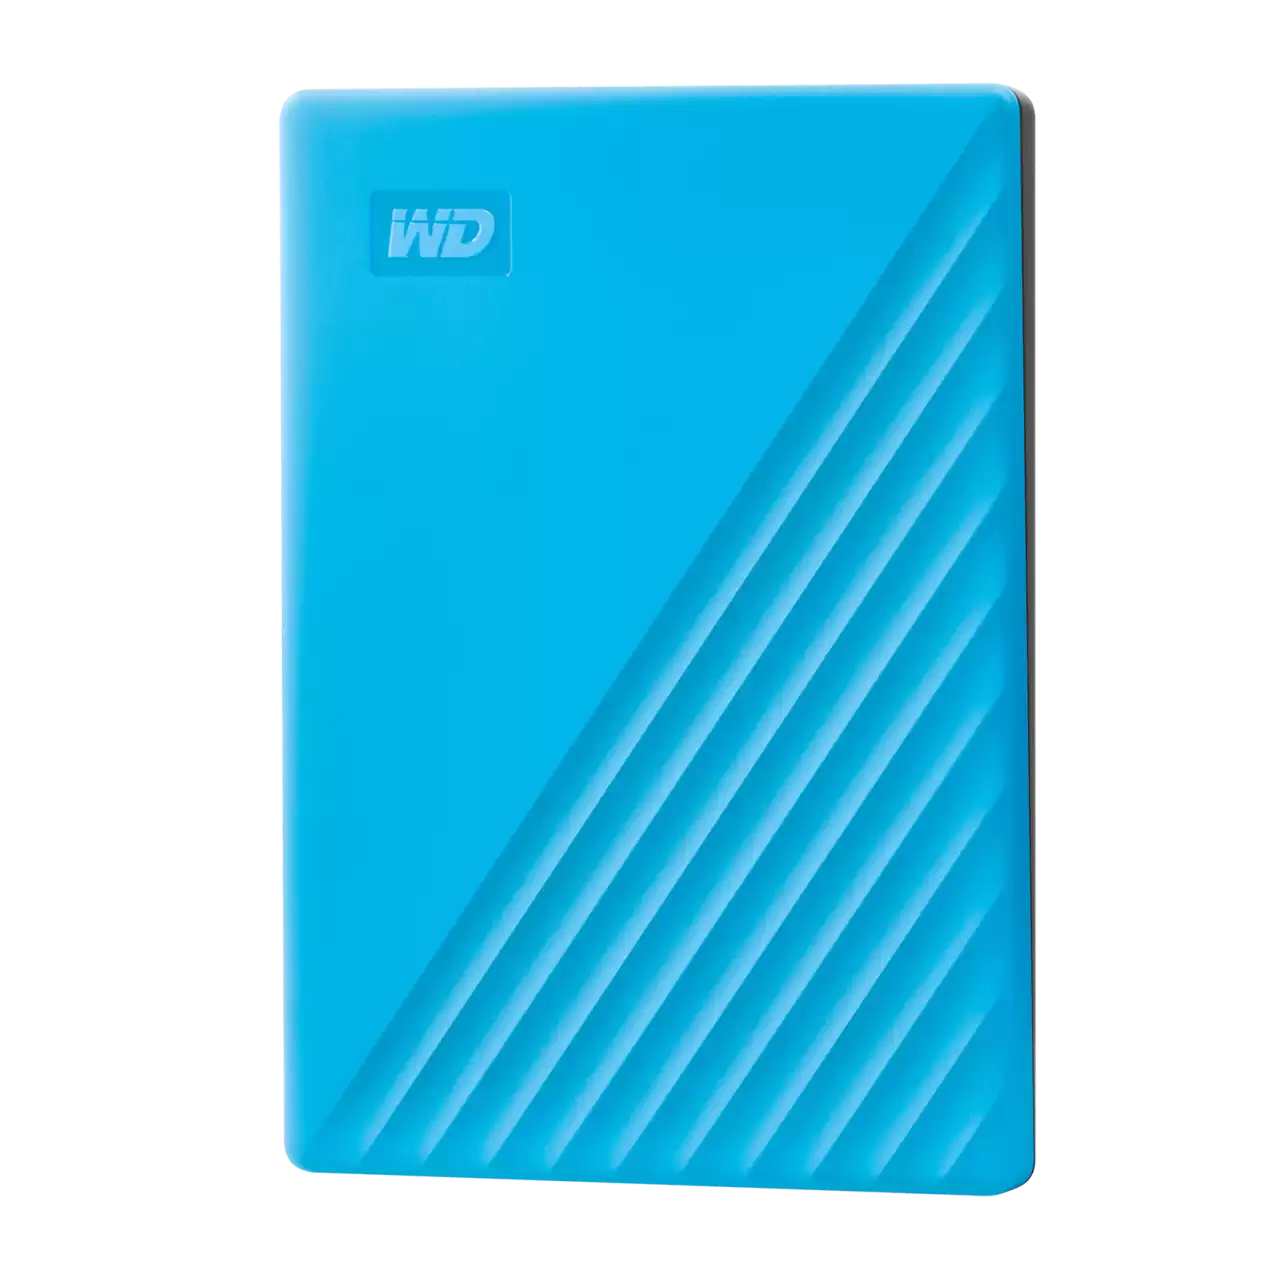 WD My Passport 1TB 2.5" External HDD - Blue (WDBYVG0010BBL)